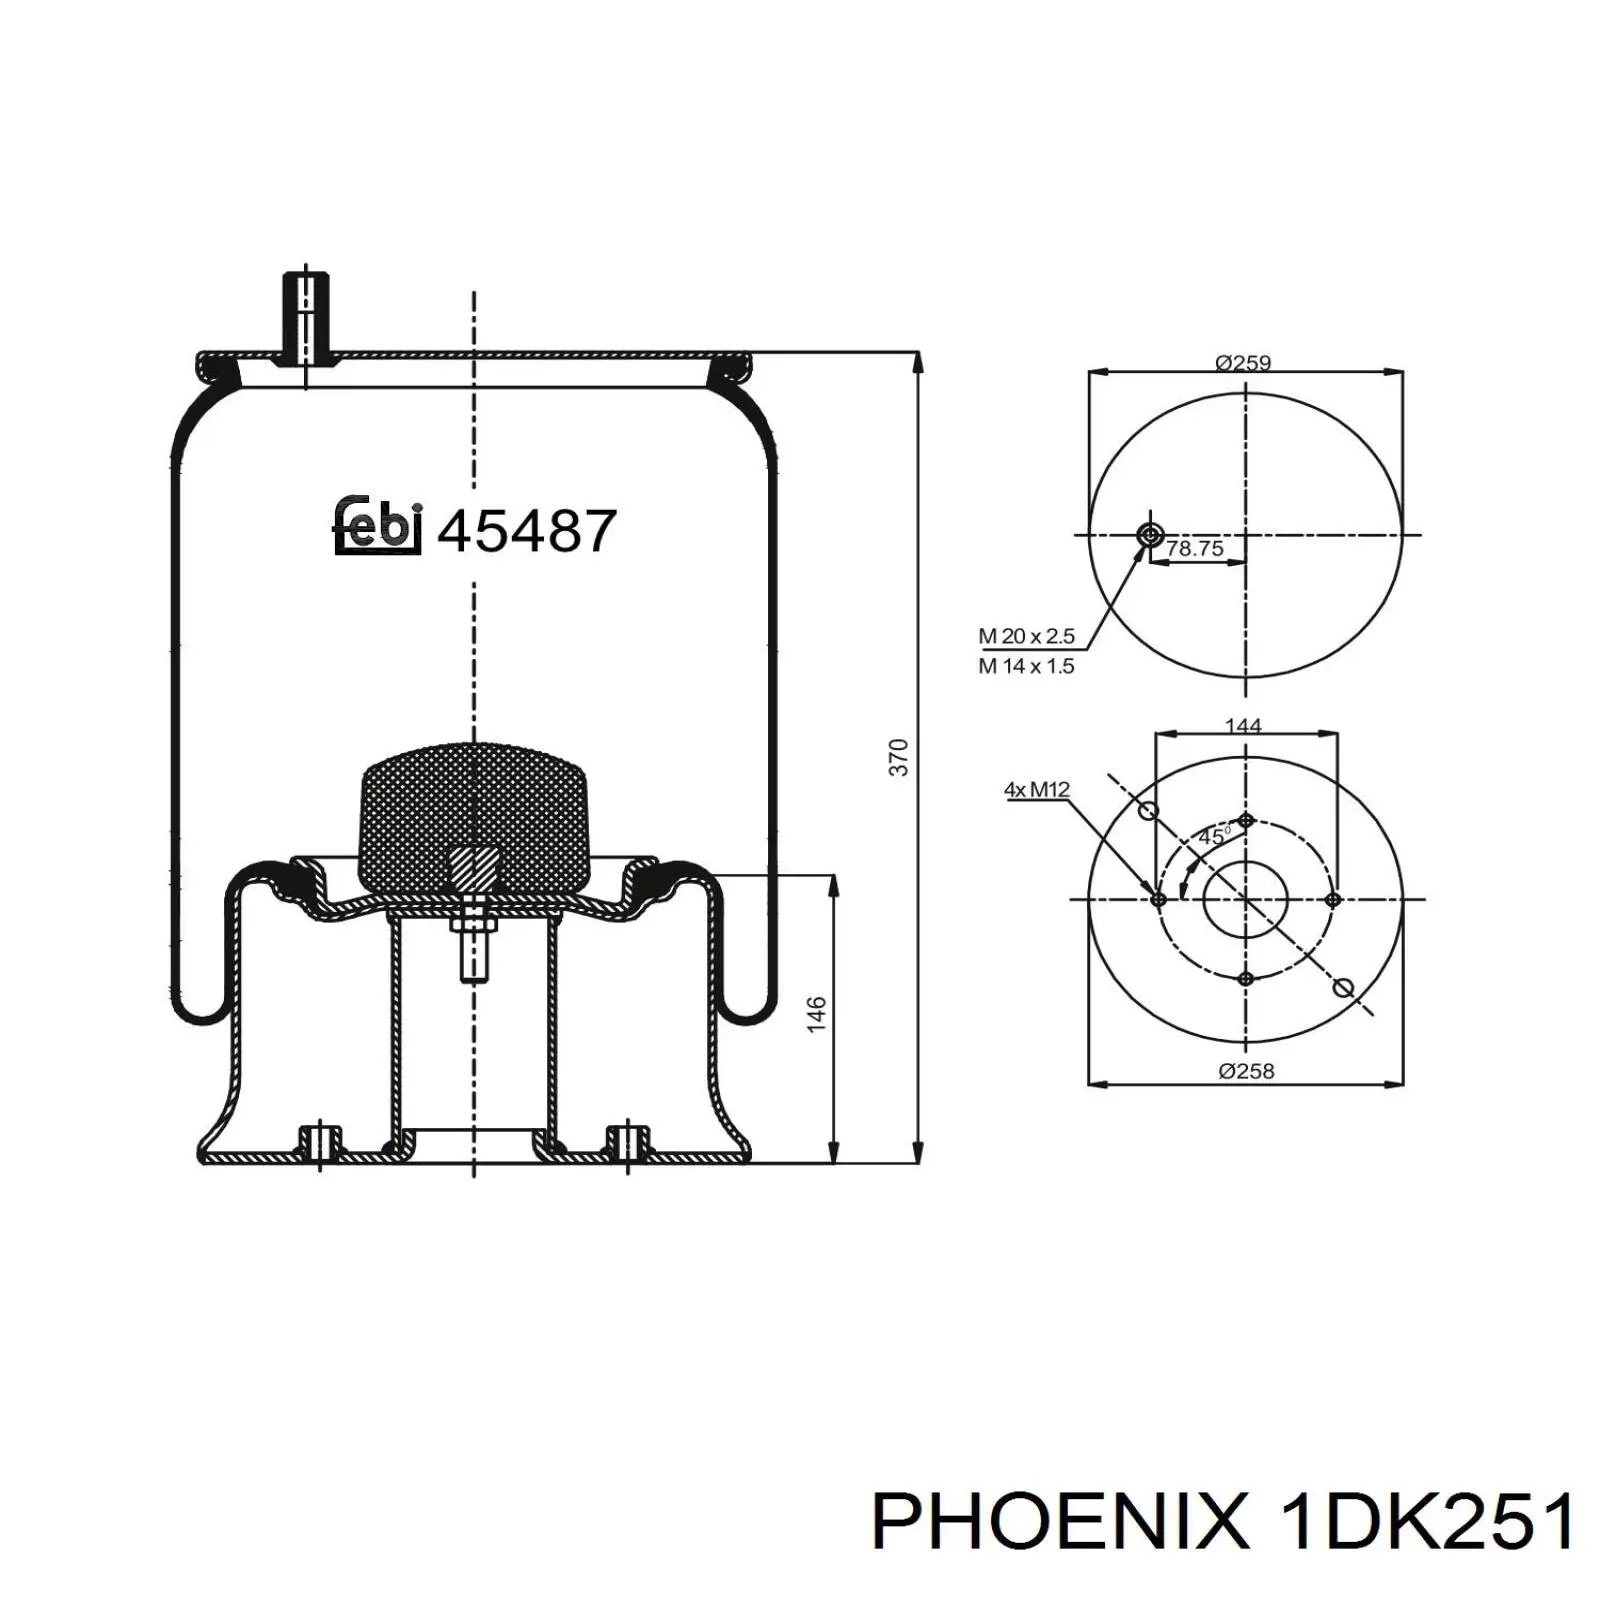 1DK251 Phoenix пневмоподушка (пневморессора моста заднего)